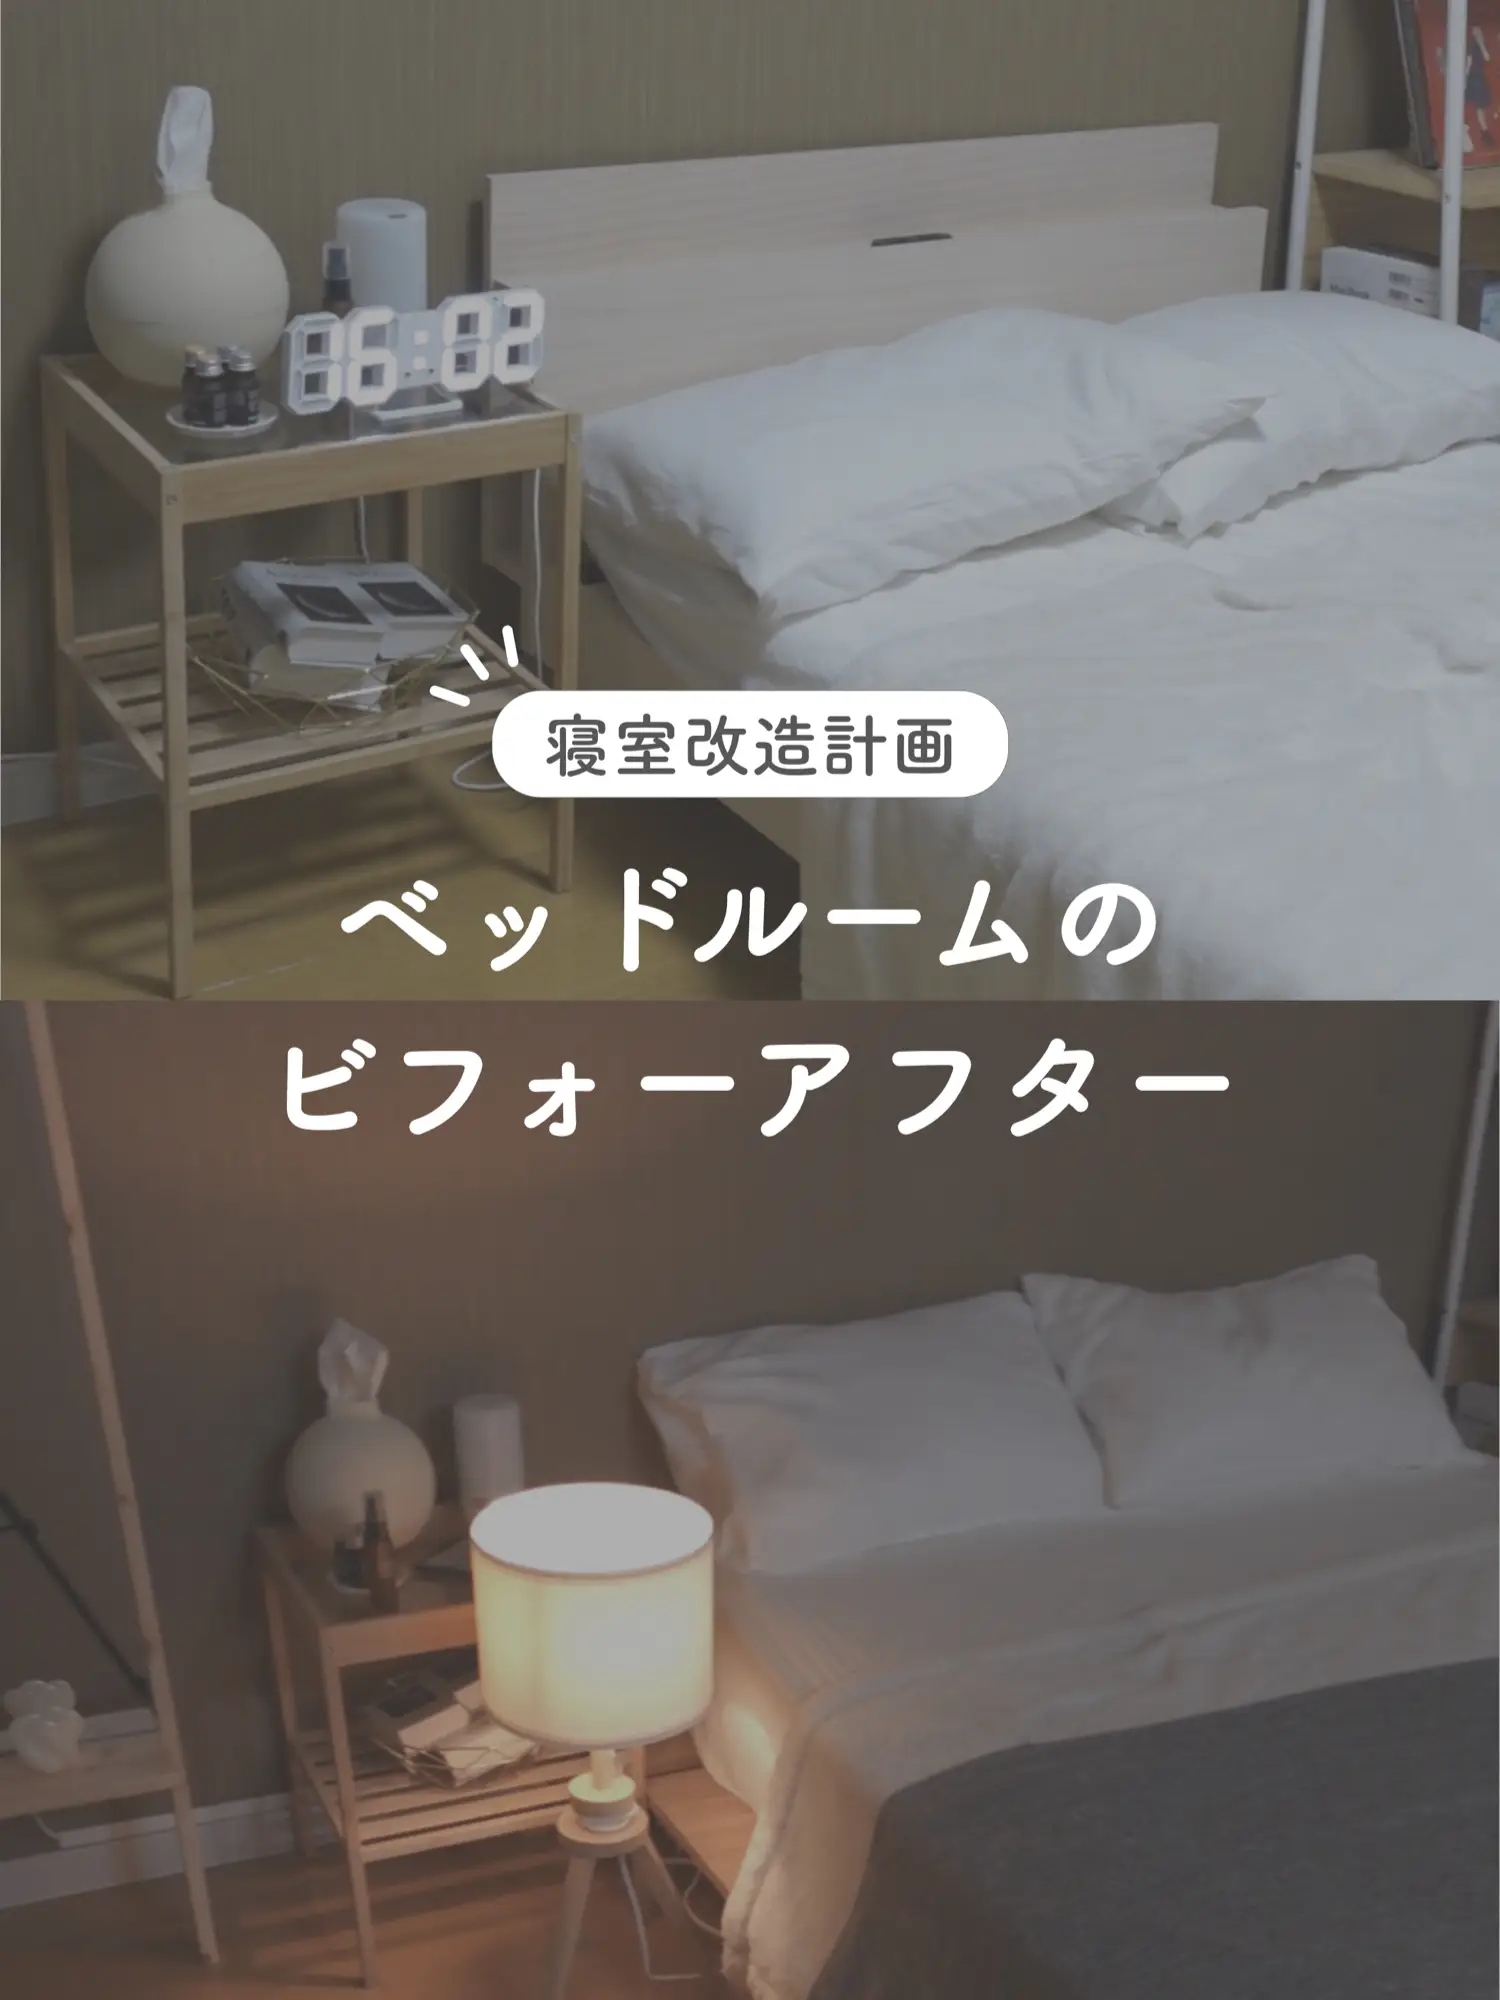 【インテリア改造計画】ベッドルームのビフォーアフターの画像 (1枚目)